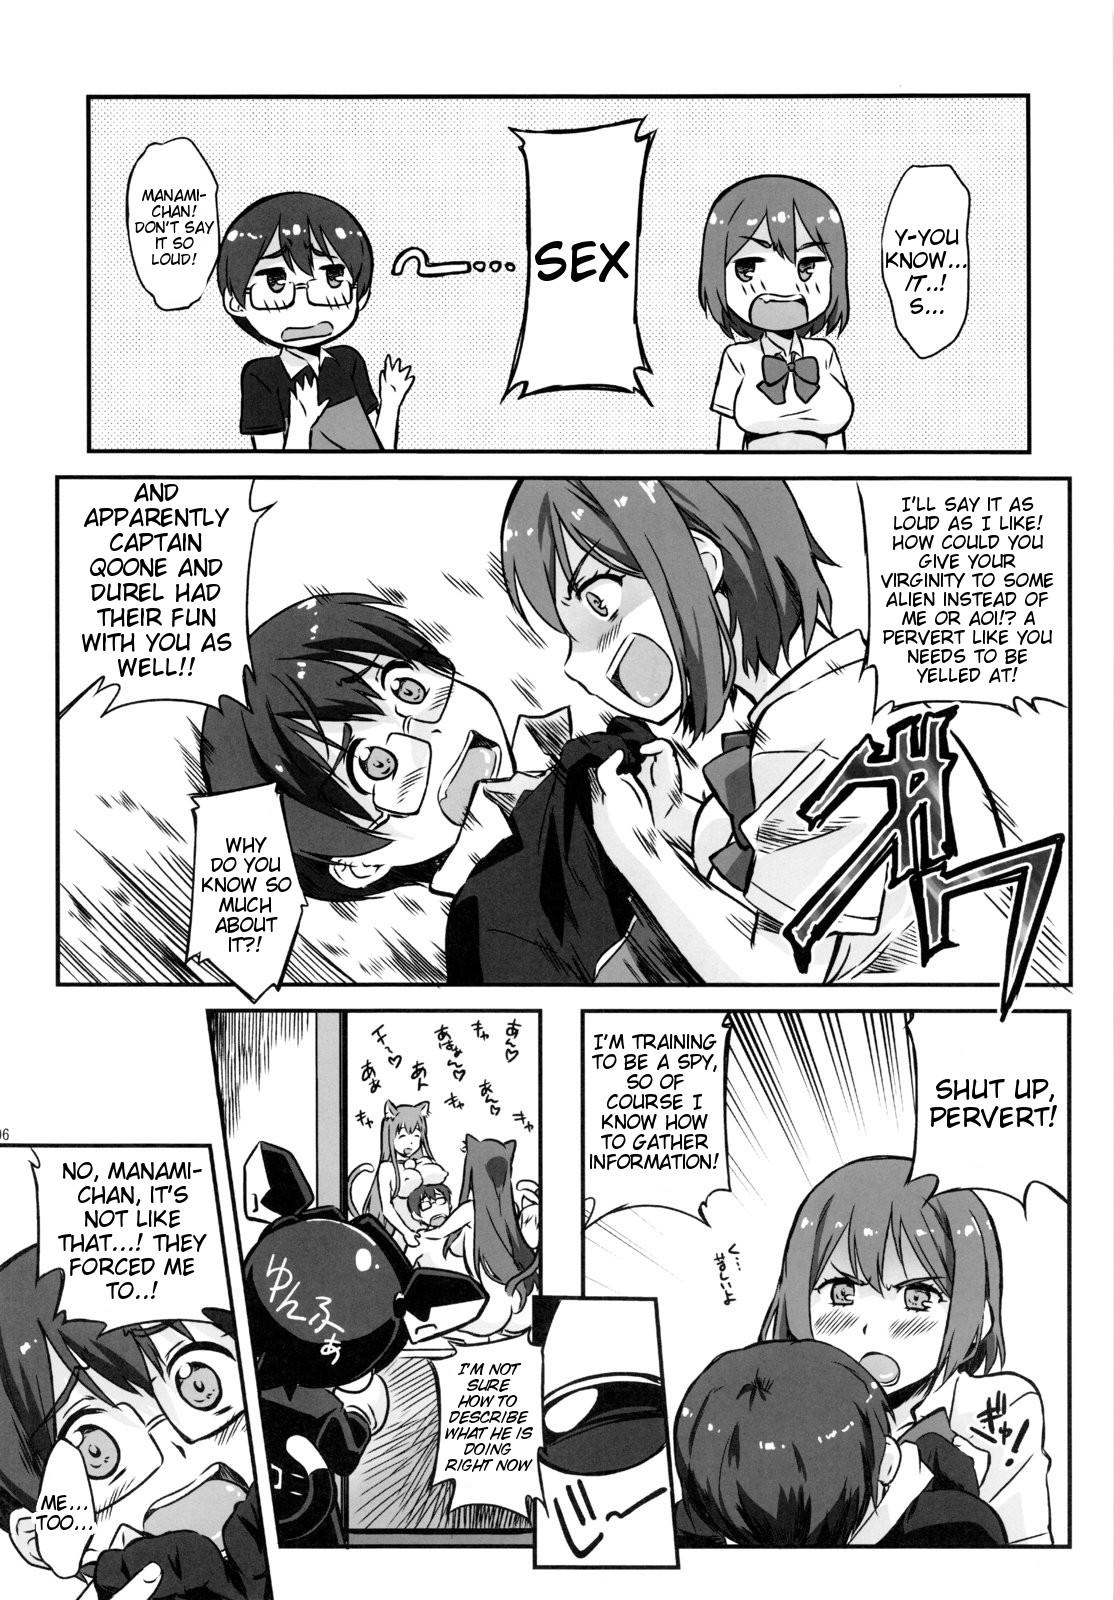 Pussy Sex Asoko de Ikuyo! 2 - Asobi ni iku yo 8teenxxx - Page 5